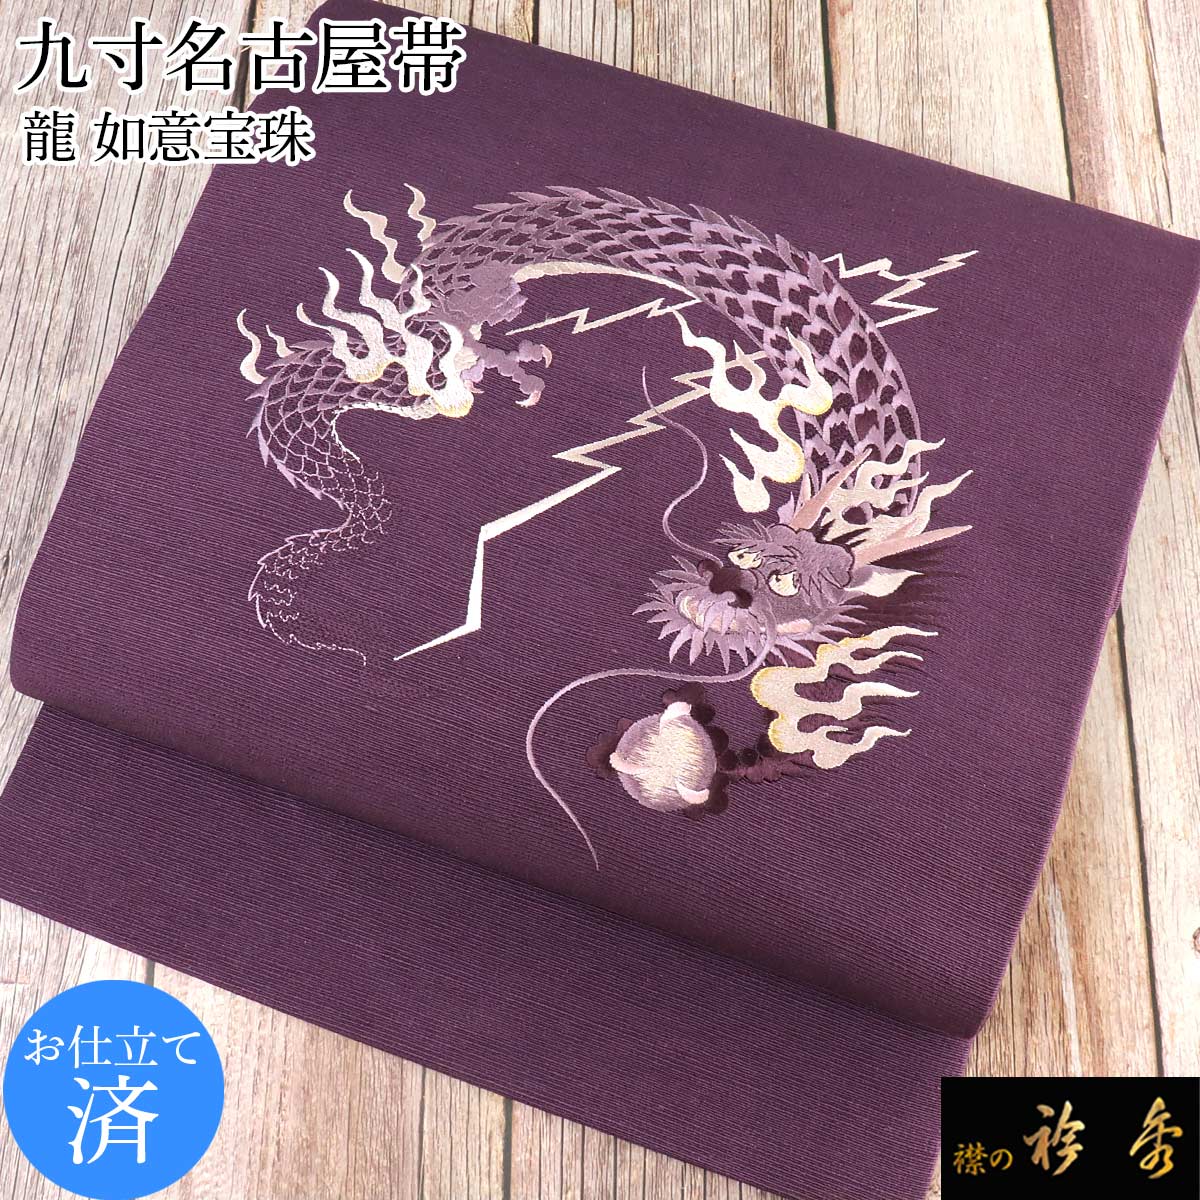 衿秀 公式 帯 名古屋帯 おび 九寸 仕立て上がり 龍 紫 刺繍 日本製 和装 